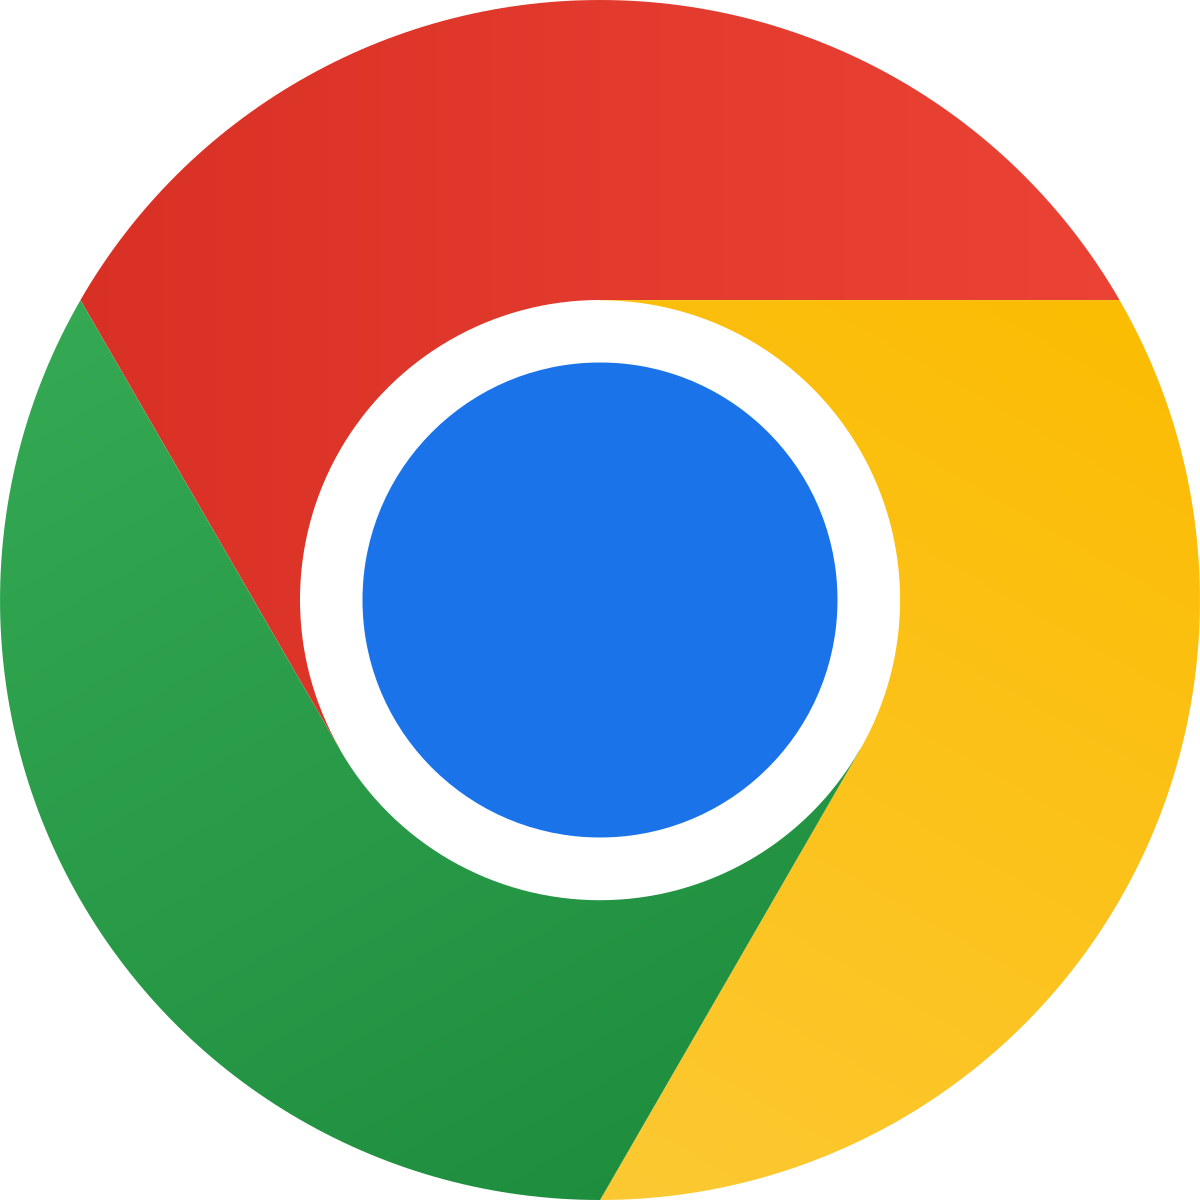 Google Chrome and Internet Explorer logos.